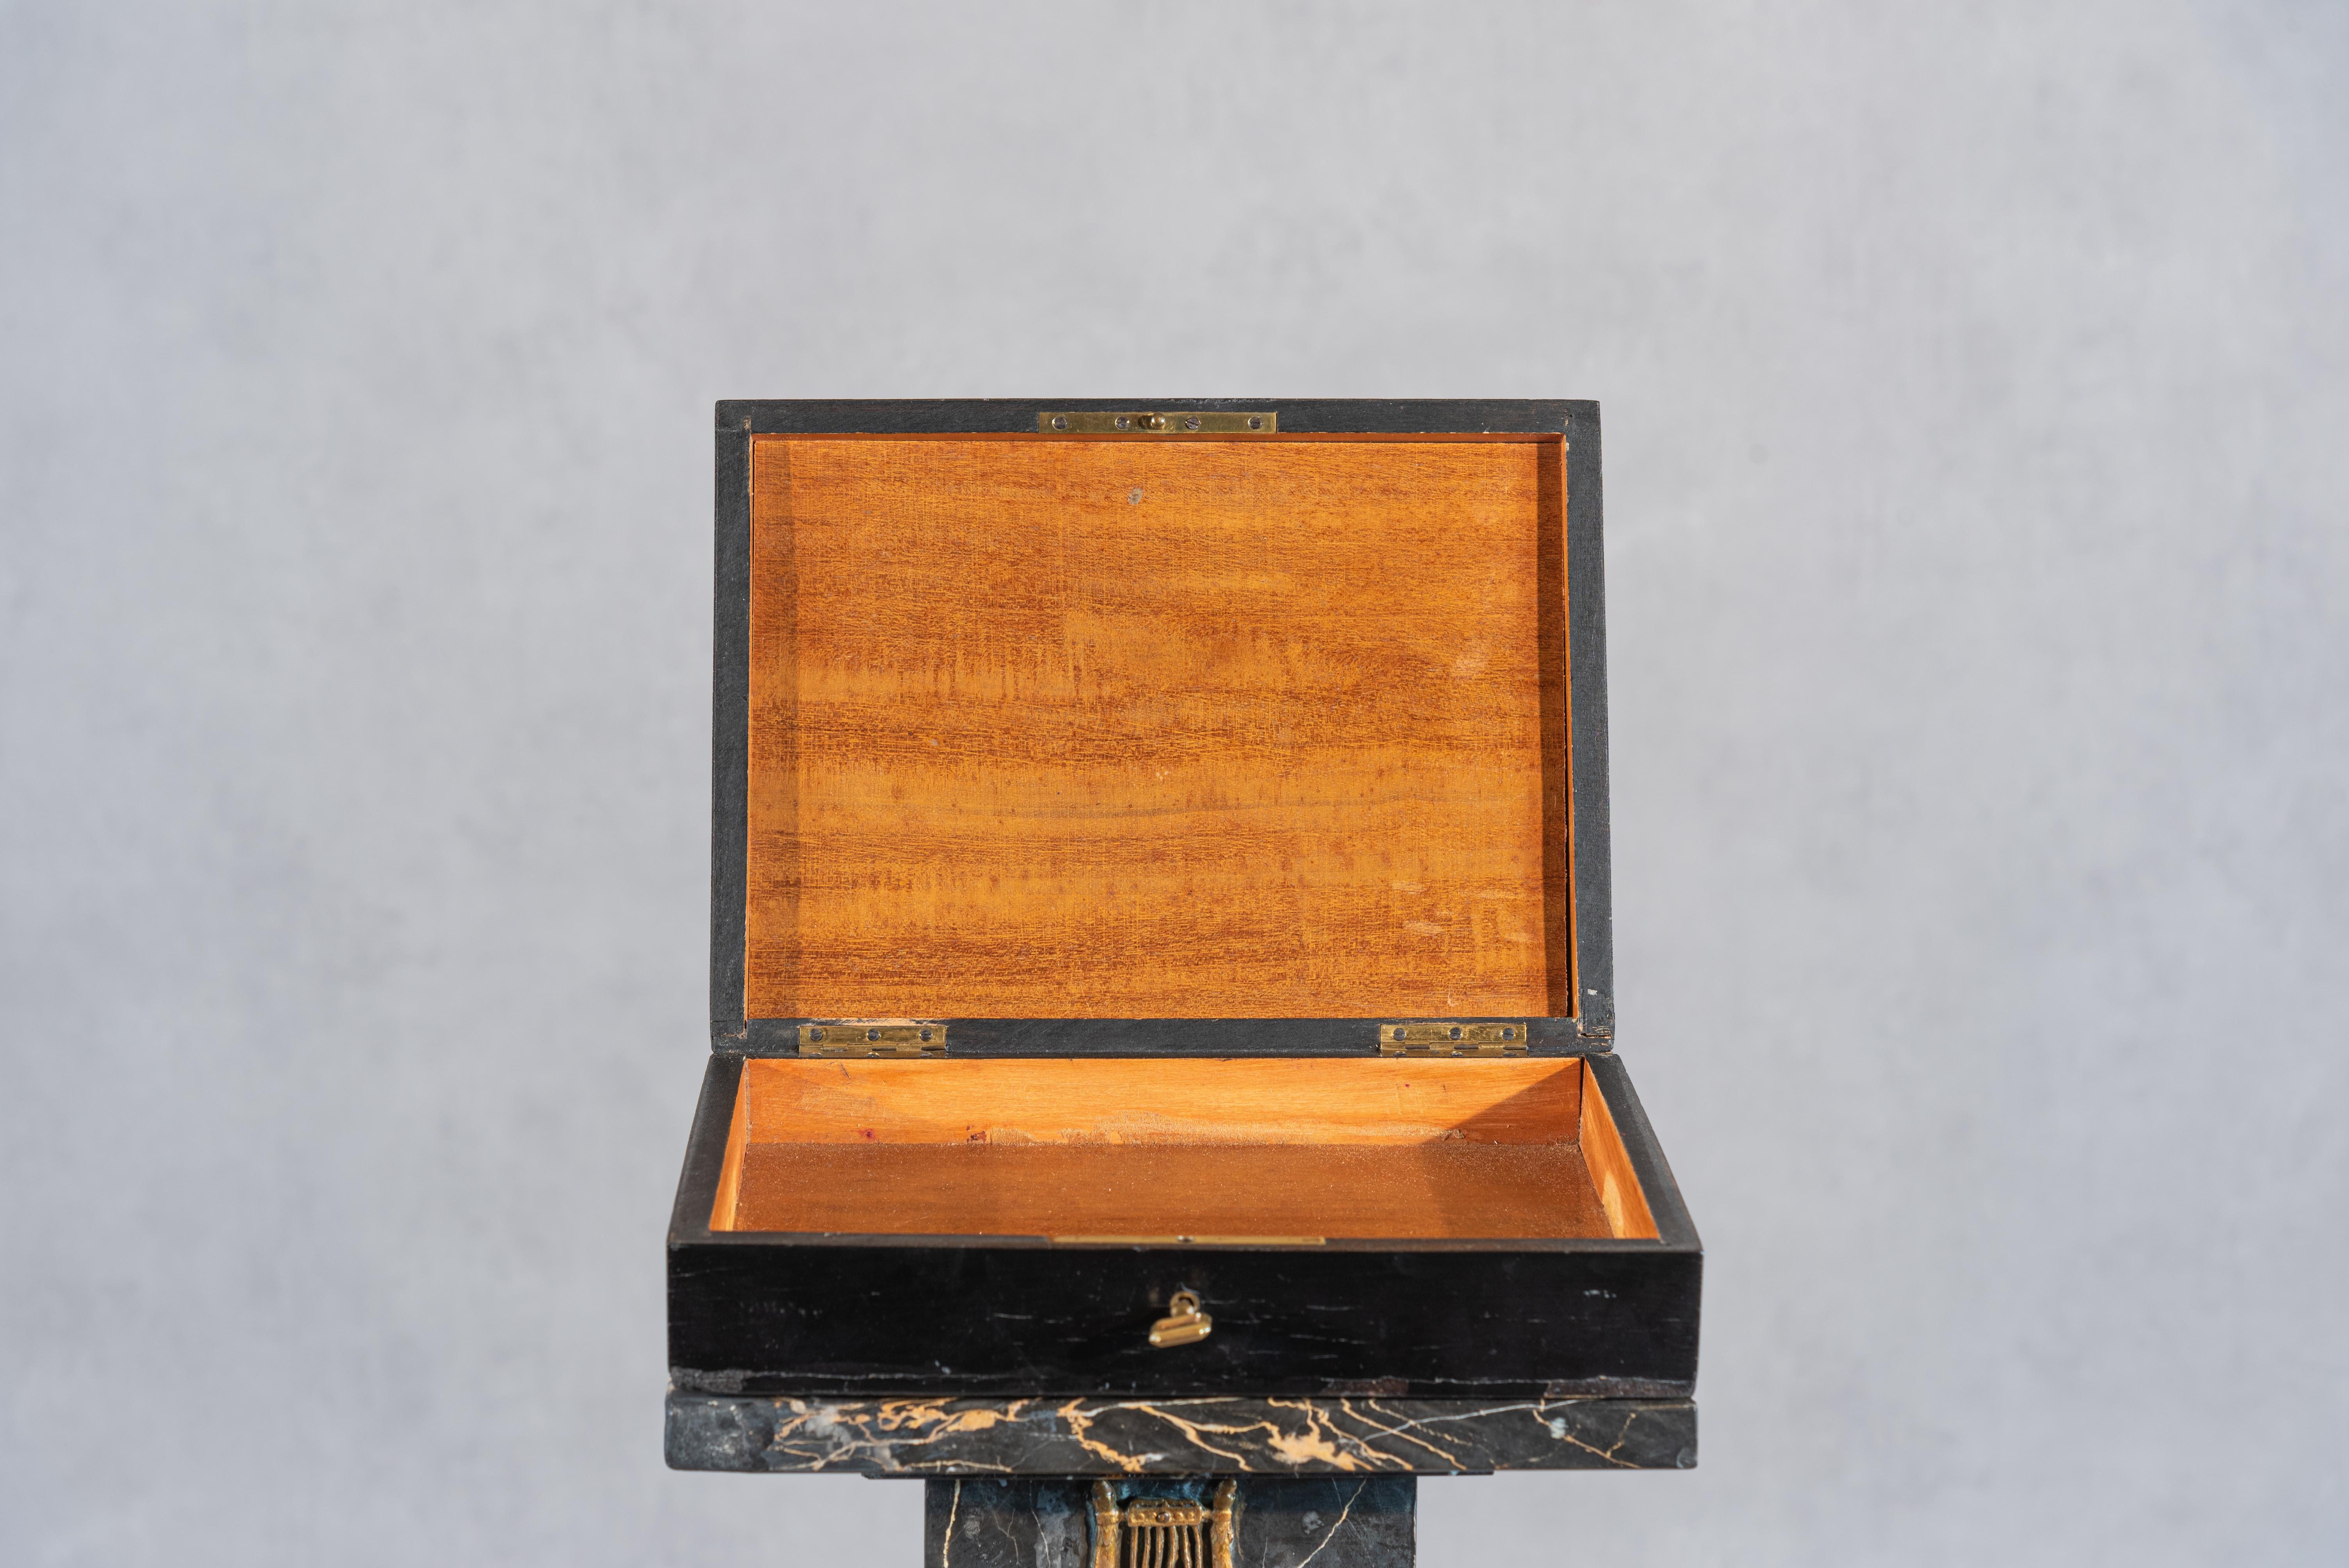 Ce coffret Napoléon III du XIXe siècle est un splendide exemple de l'artisanat et de l'élégance caractéristiques de l'époque de Napoléon III. Fabriquée en riche bois de noyer noir et ornée de détails complexes en laiton, cette boîte dégage un